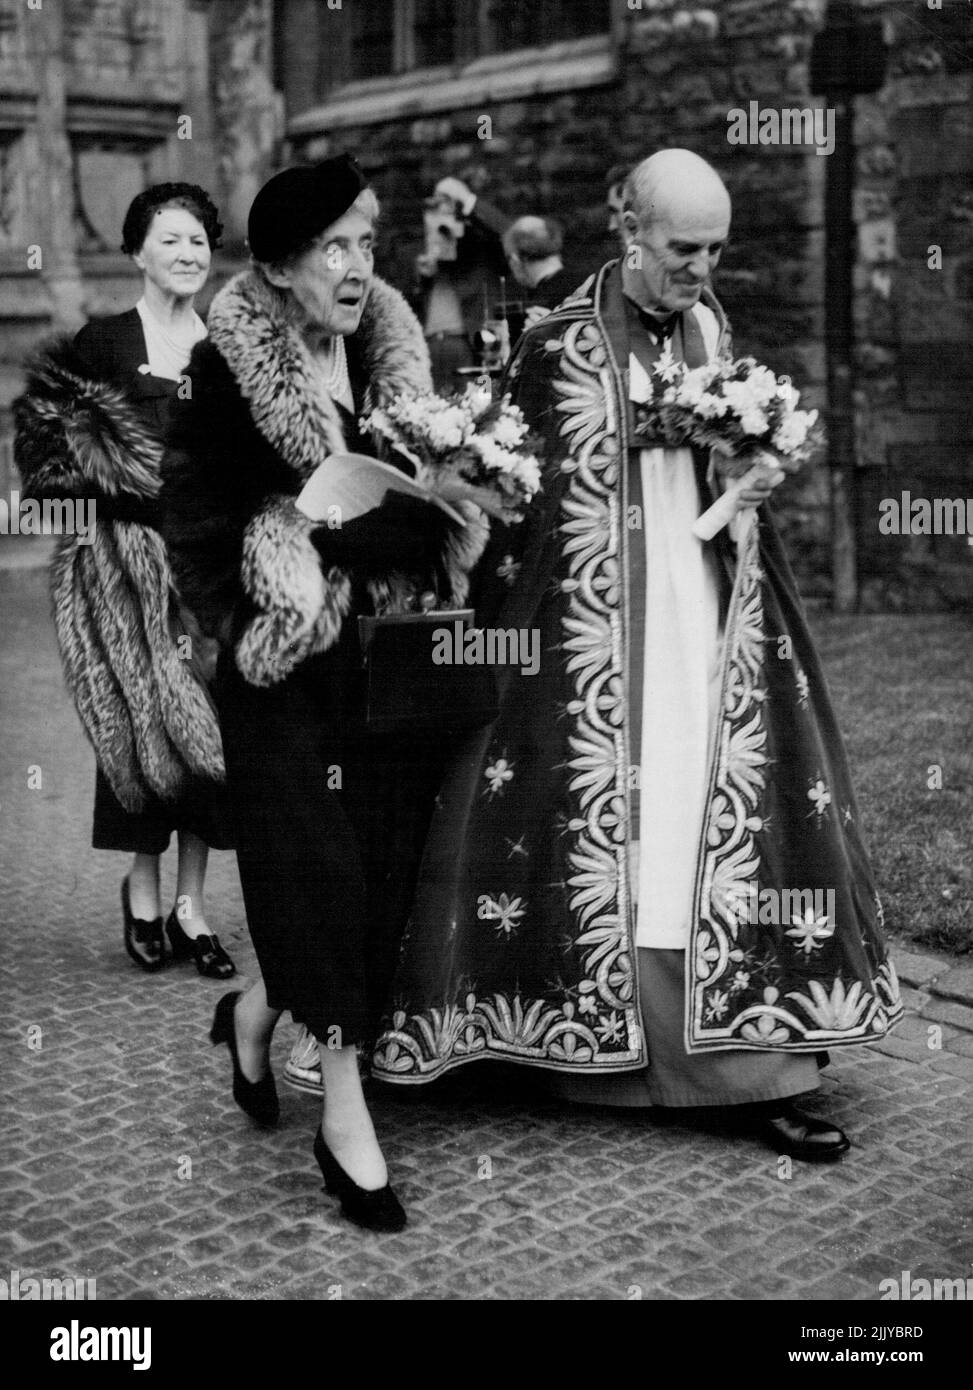 Princesa Marie Louise en el Servicio Monetario Maundy -- Princesa Marie Louise, suplente de la madre Reina, acompañada por el Decano de Westminster, Dr. Alan C. Don, en el Servicio Real de Maundy en la Abadía de Westminster, Londres, hasta el día de hoy (Jueves Maundy). La Princesa distribuyó las monedas de Maundy a cada destinatario un centavo por cada año de vida de la Reina. La ceremonia se remonta a los días en que el monarca lavaba los pies de los pobres, simbolizando la espeleología de Cristo de los pies de los Apóstoles. 15 de abril de 1954. (Foto de Reuterphoto). Foto de stock